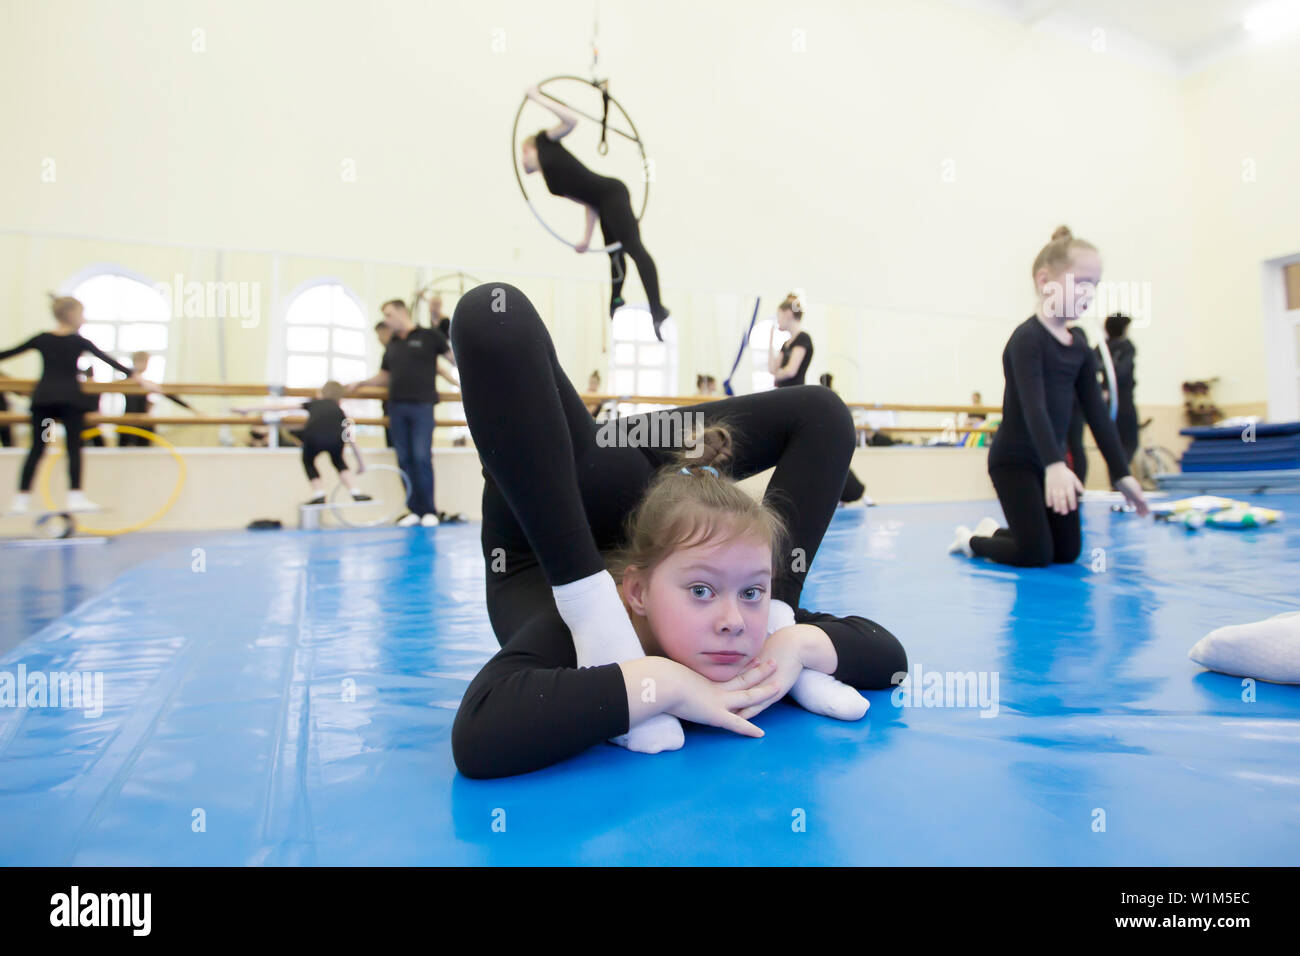 niña linda haciendo gimnasia y ejercicios de estiramiento con cinta, niño  flexible en estilo de dibujos animados, lección acrobática en la escuela,  pose de actividad de baile 10808989 Vector en Vecteezy